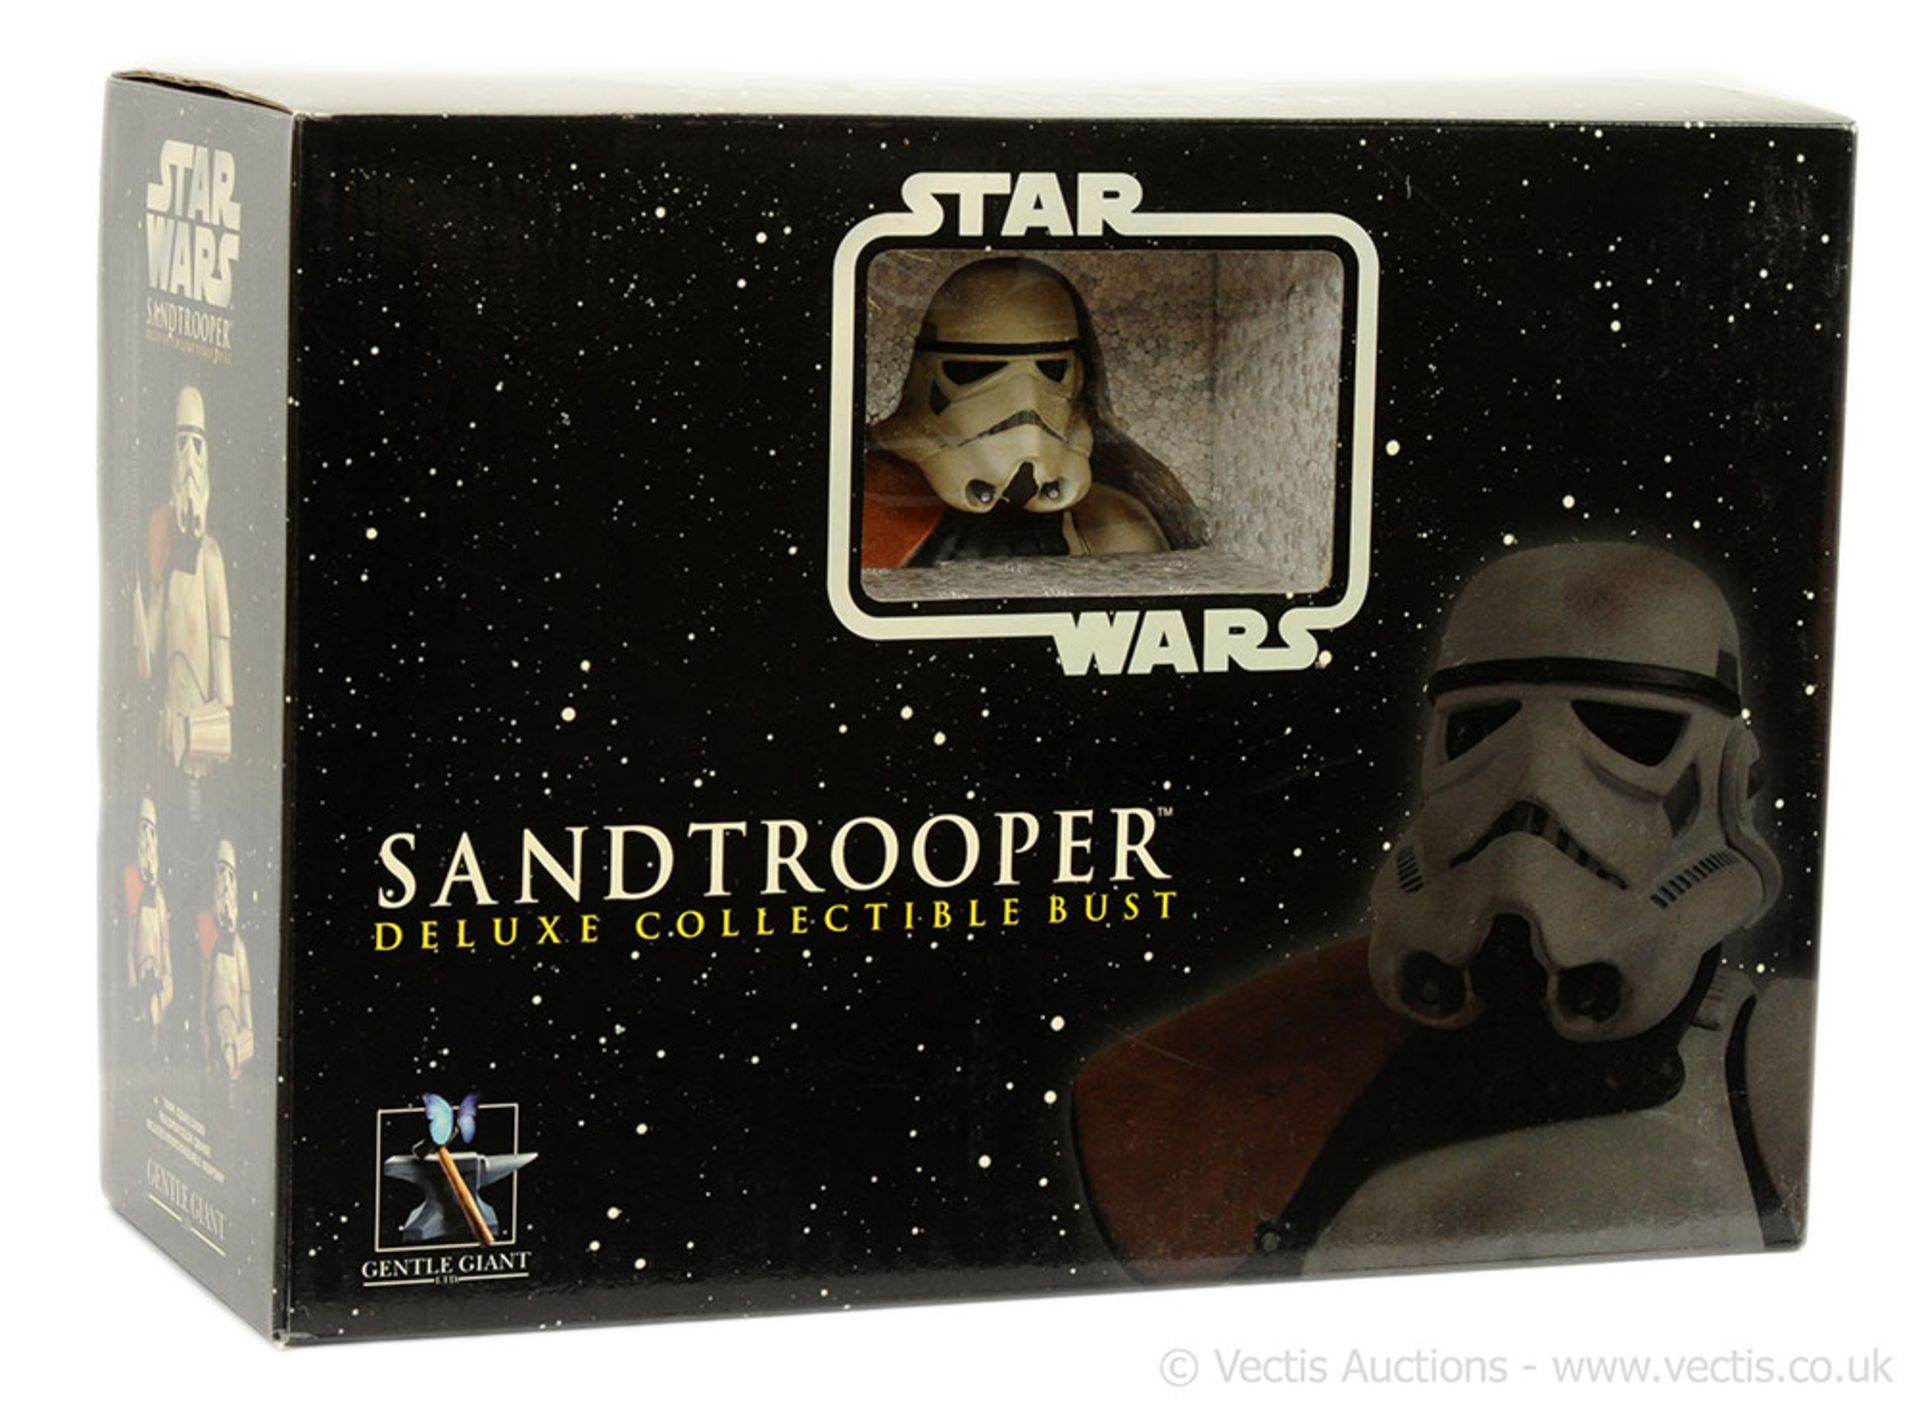 Gentle Giant Star Wars Sandtrooper (Squad Leader